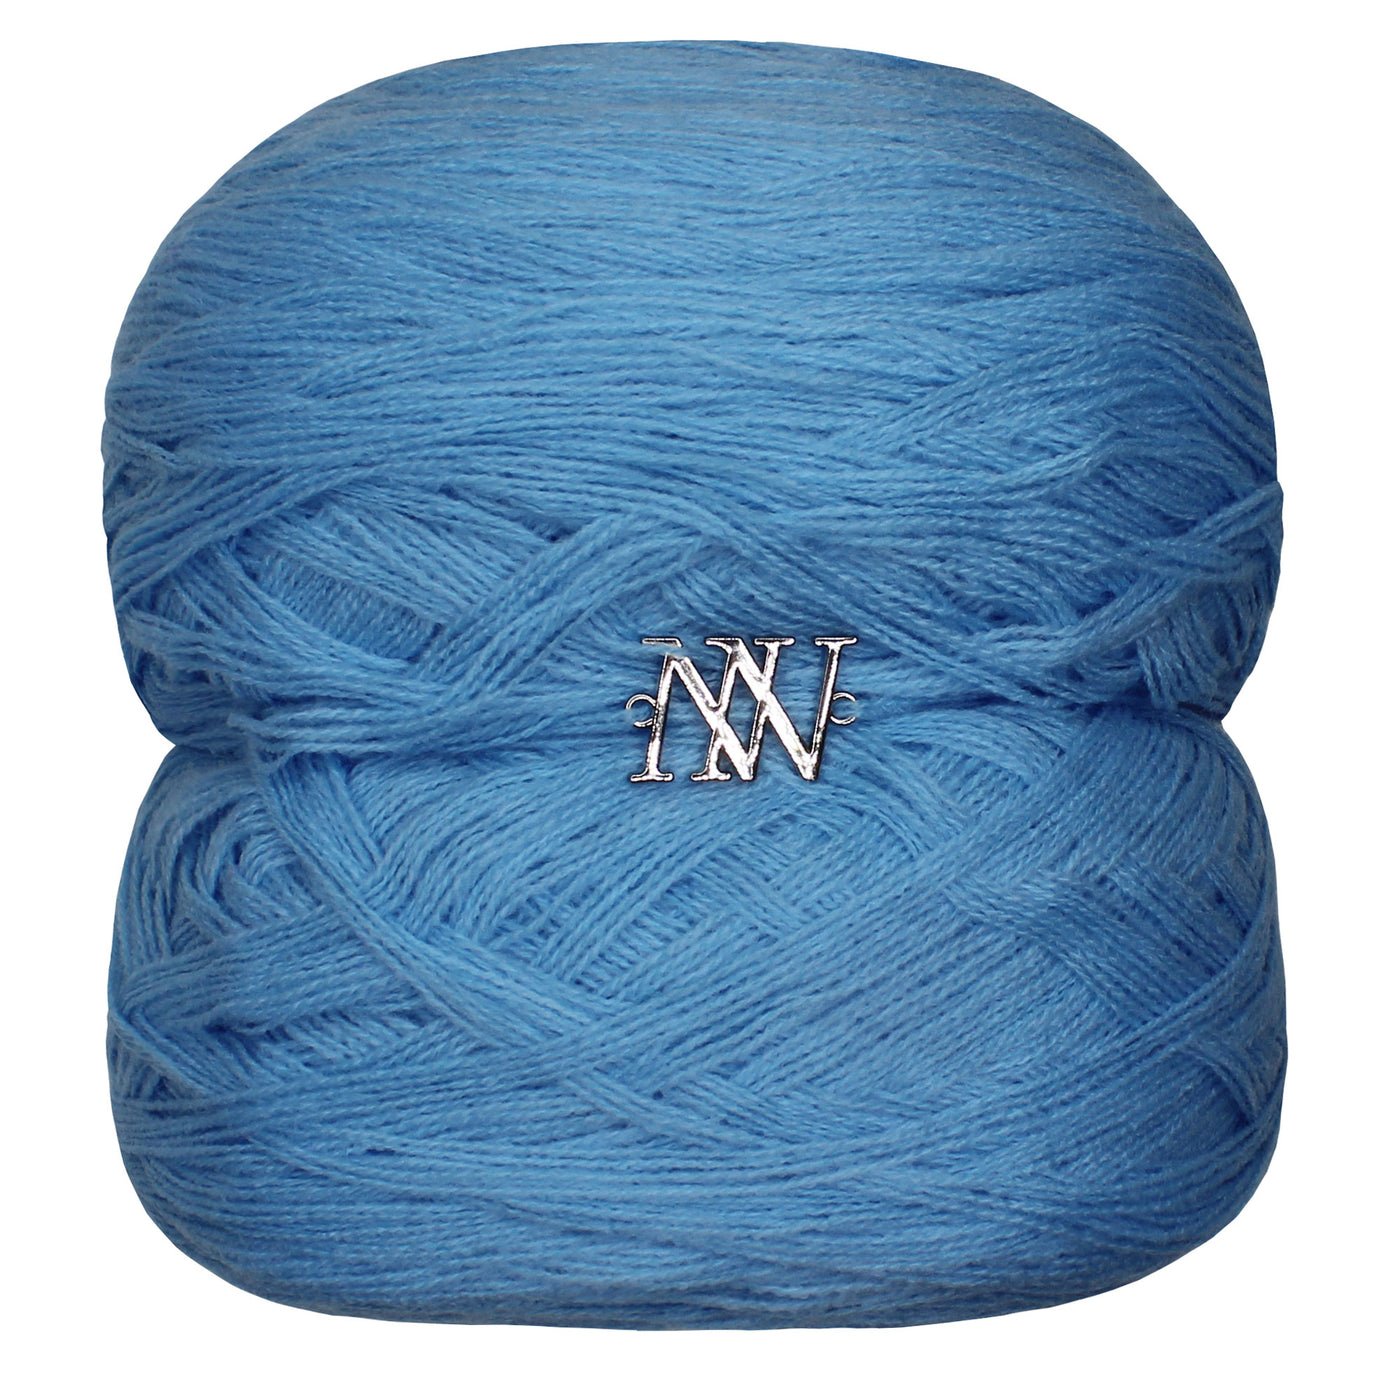 The Crafty Lady Boss Yarn - Baby Blue